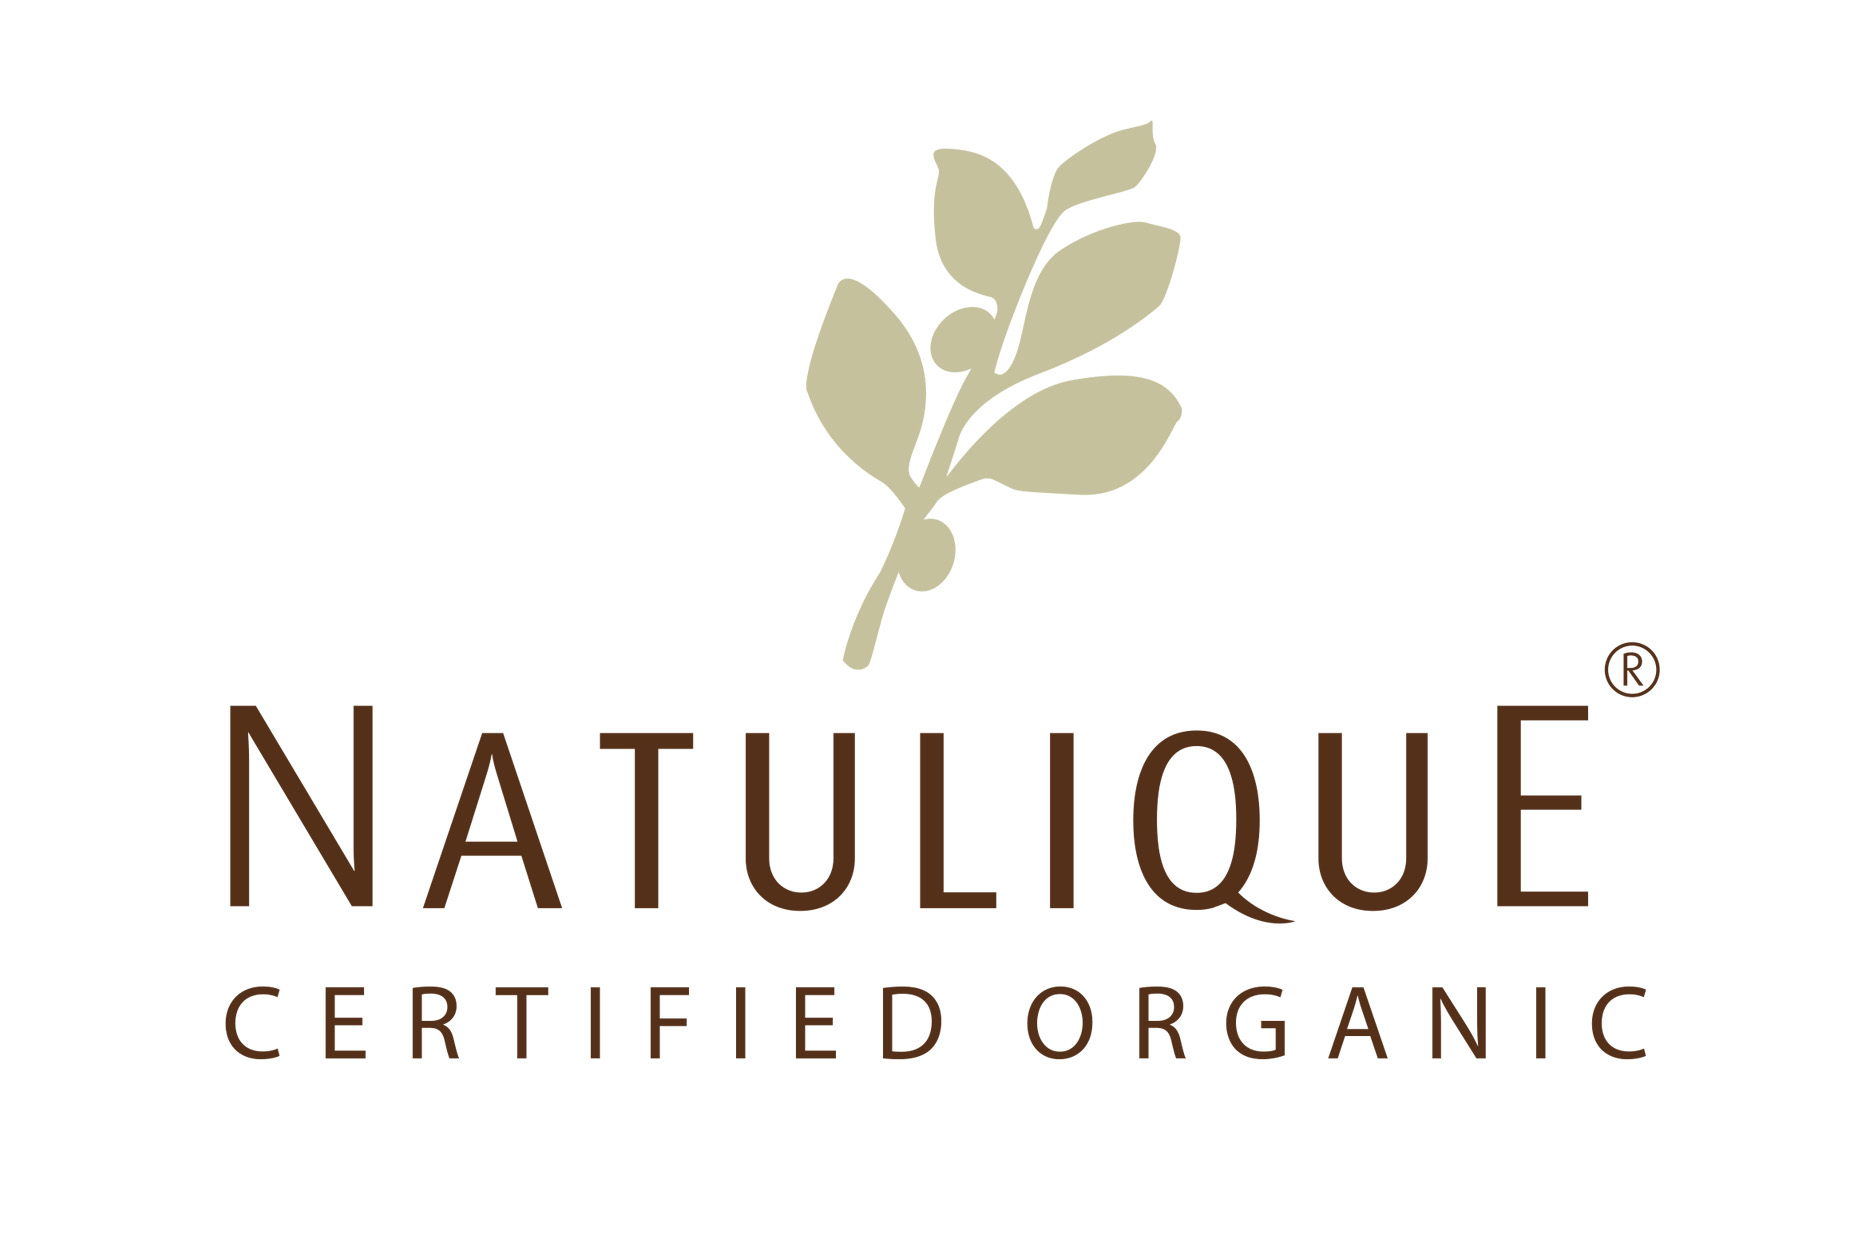 Natulique logo